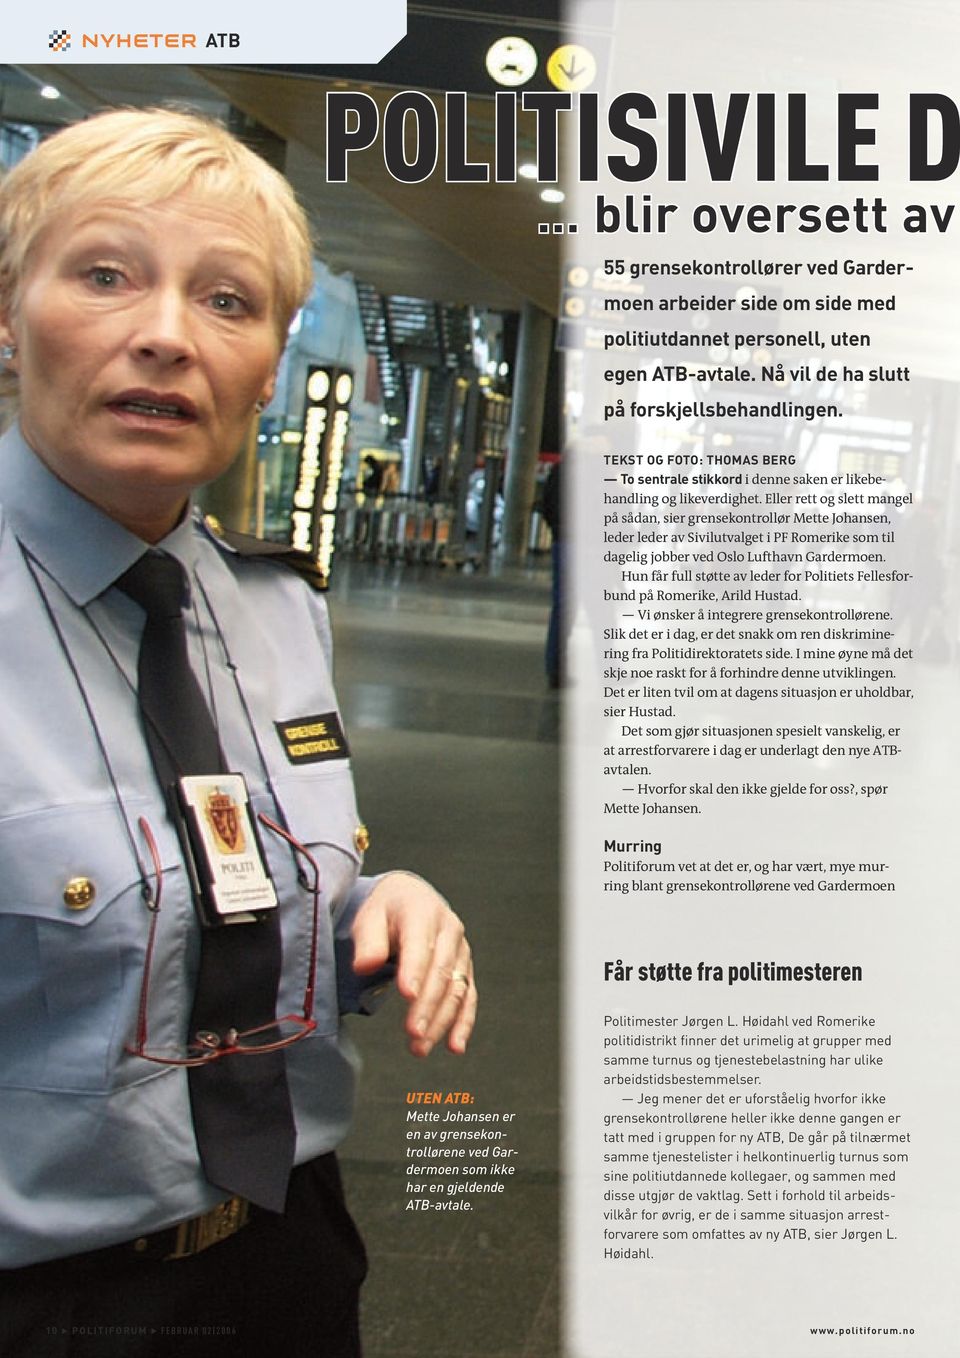 Eller rett og slett mangel på sådan, sier grensekontrollør Mette Johansen, leder leder av Sivilutvalget i PF Romerike som til dagelig jobber ved Oslo Lufthavn Gardermoen.